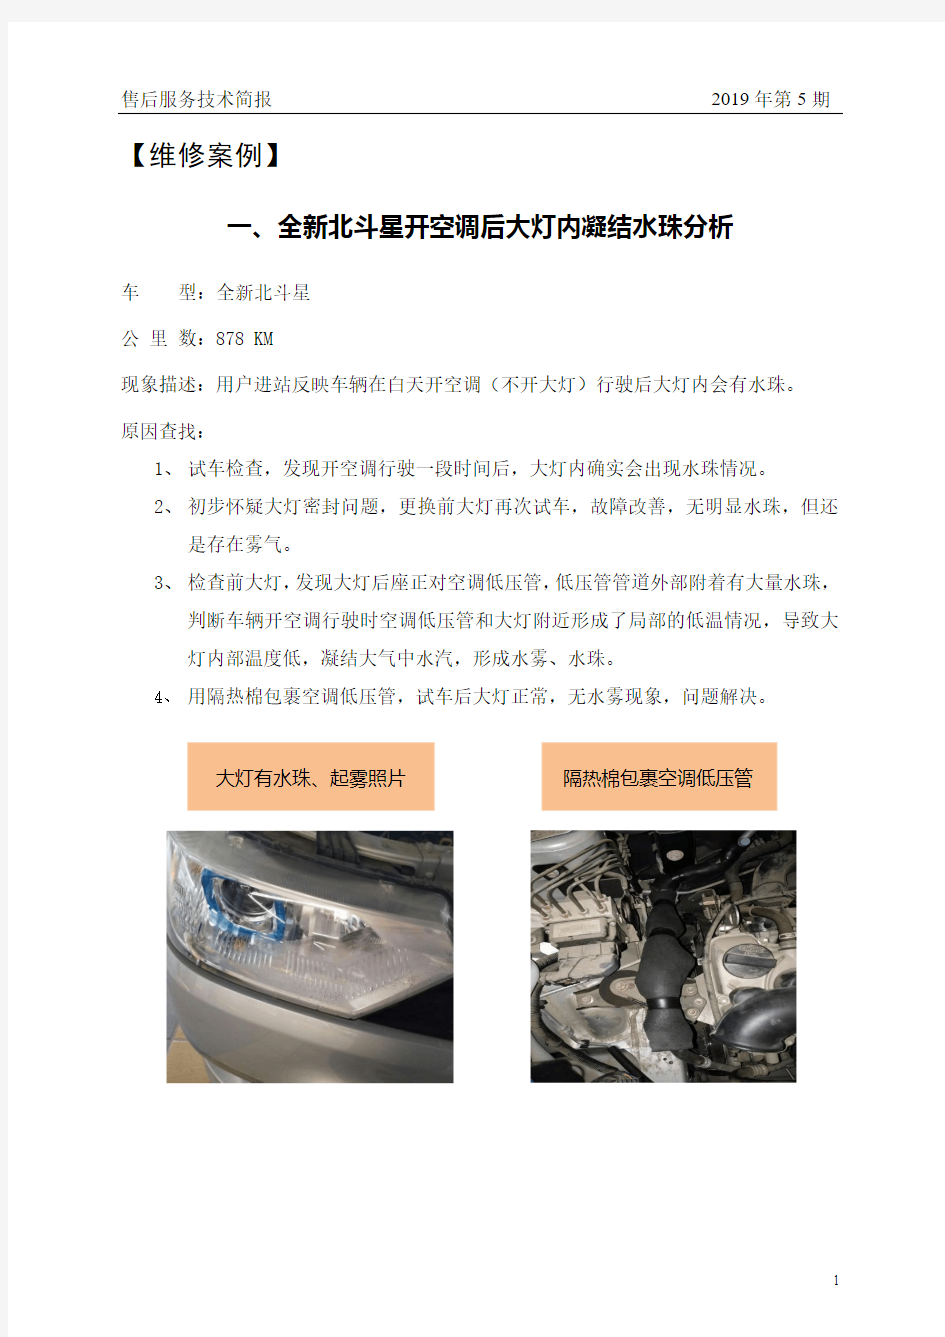 昌河汽车2019年第5期售后服务技术简报